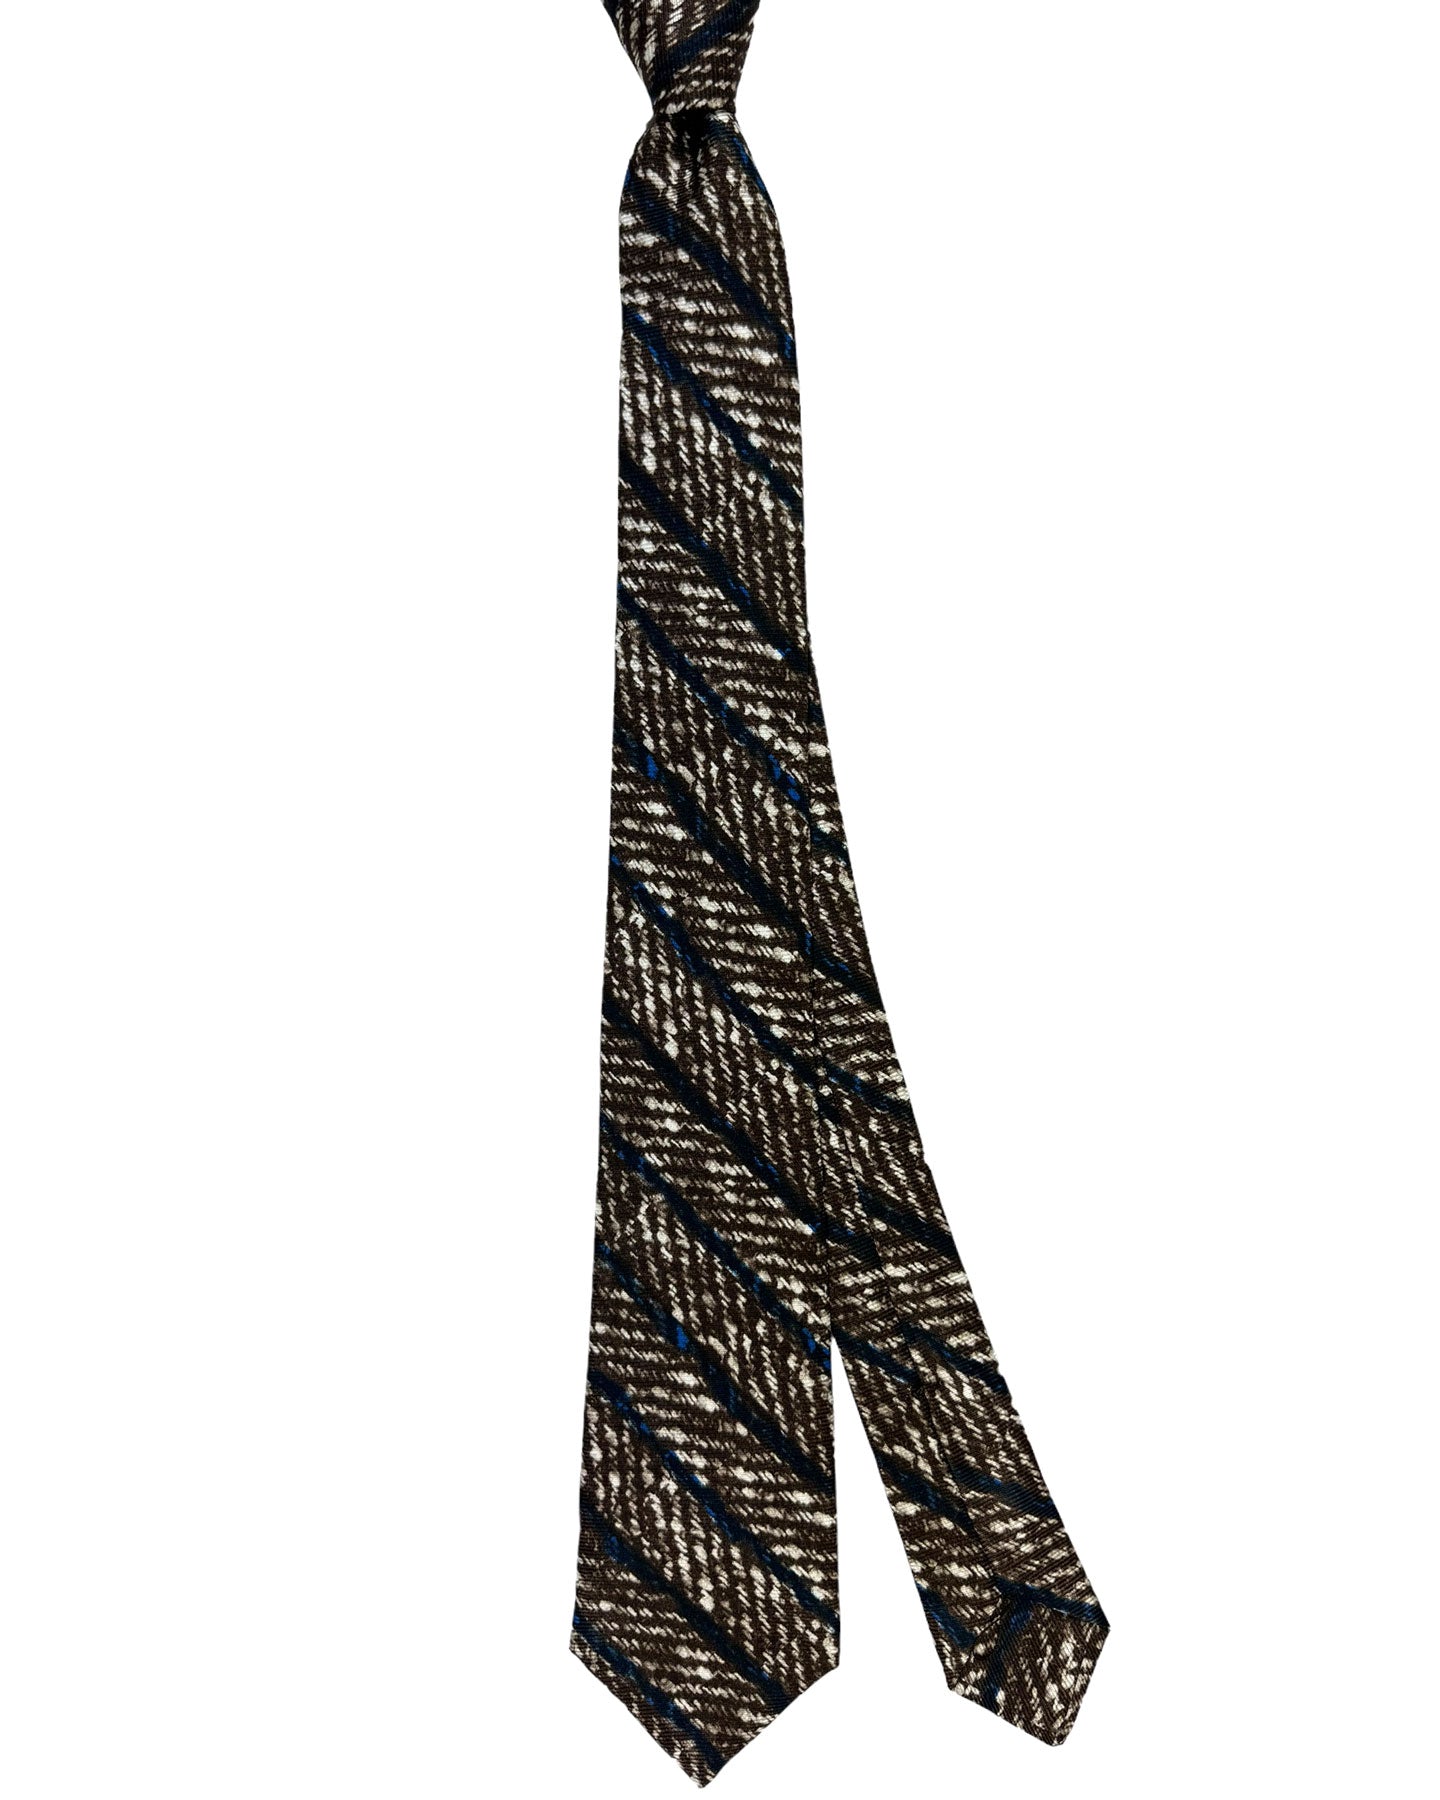 Kiton Silk Tie White Brown Dark Blue Herringbone Stripes Design - Sevenfold Necktie